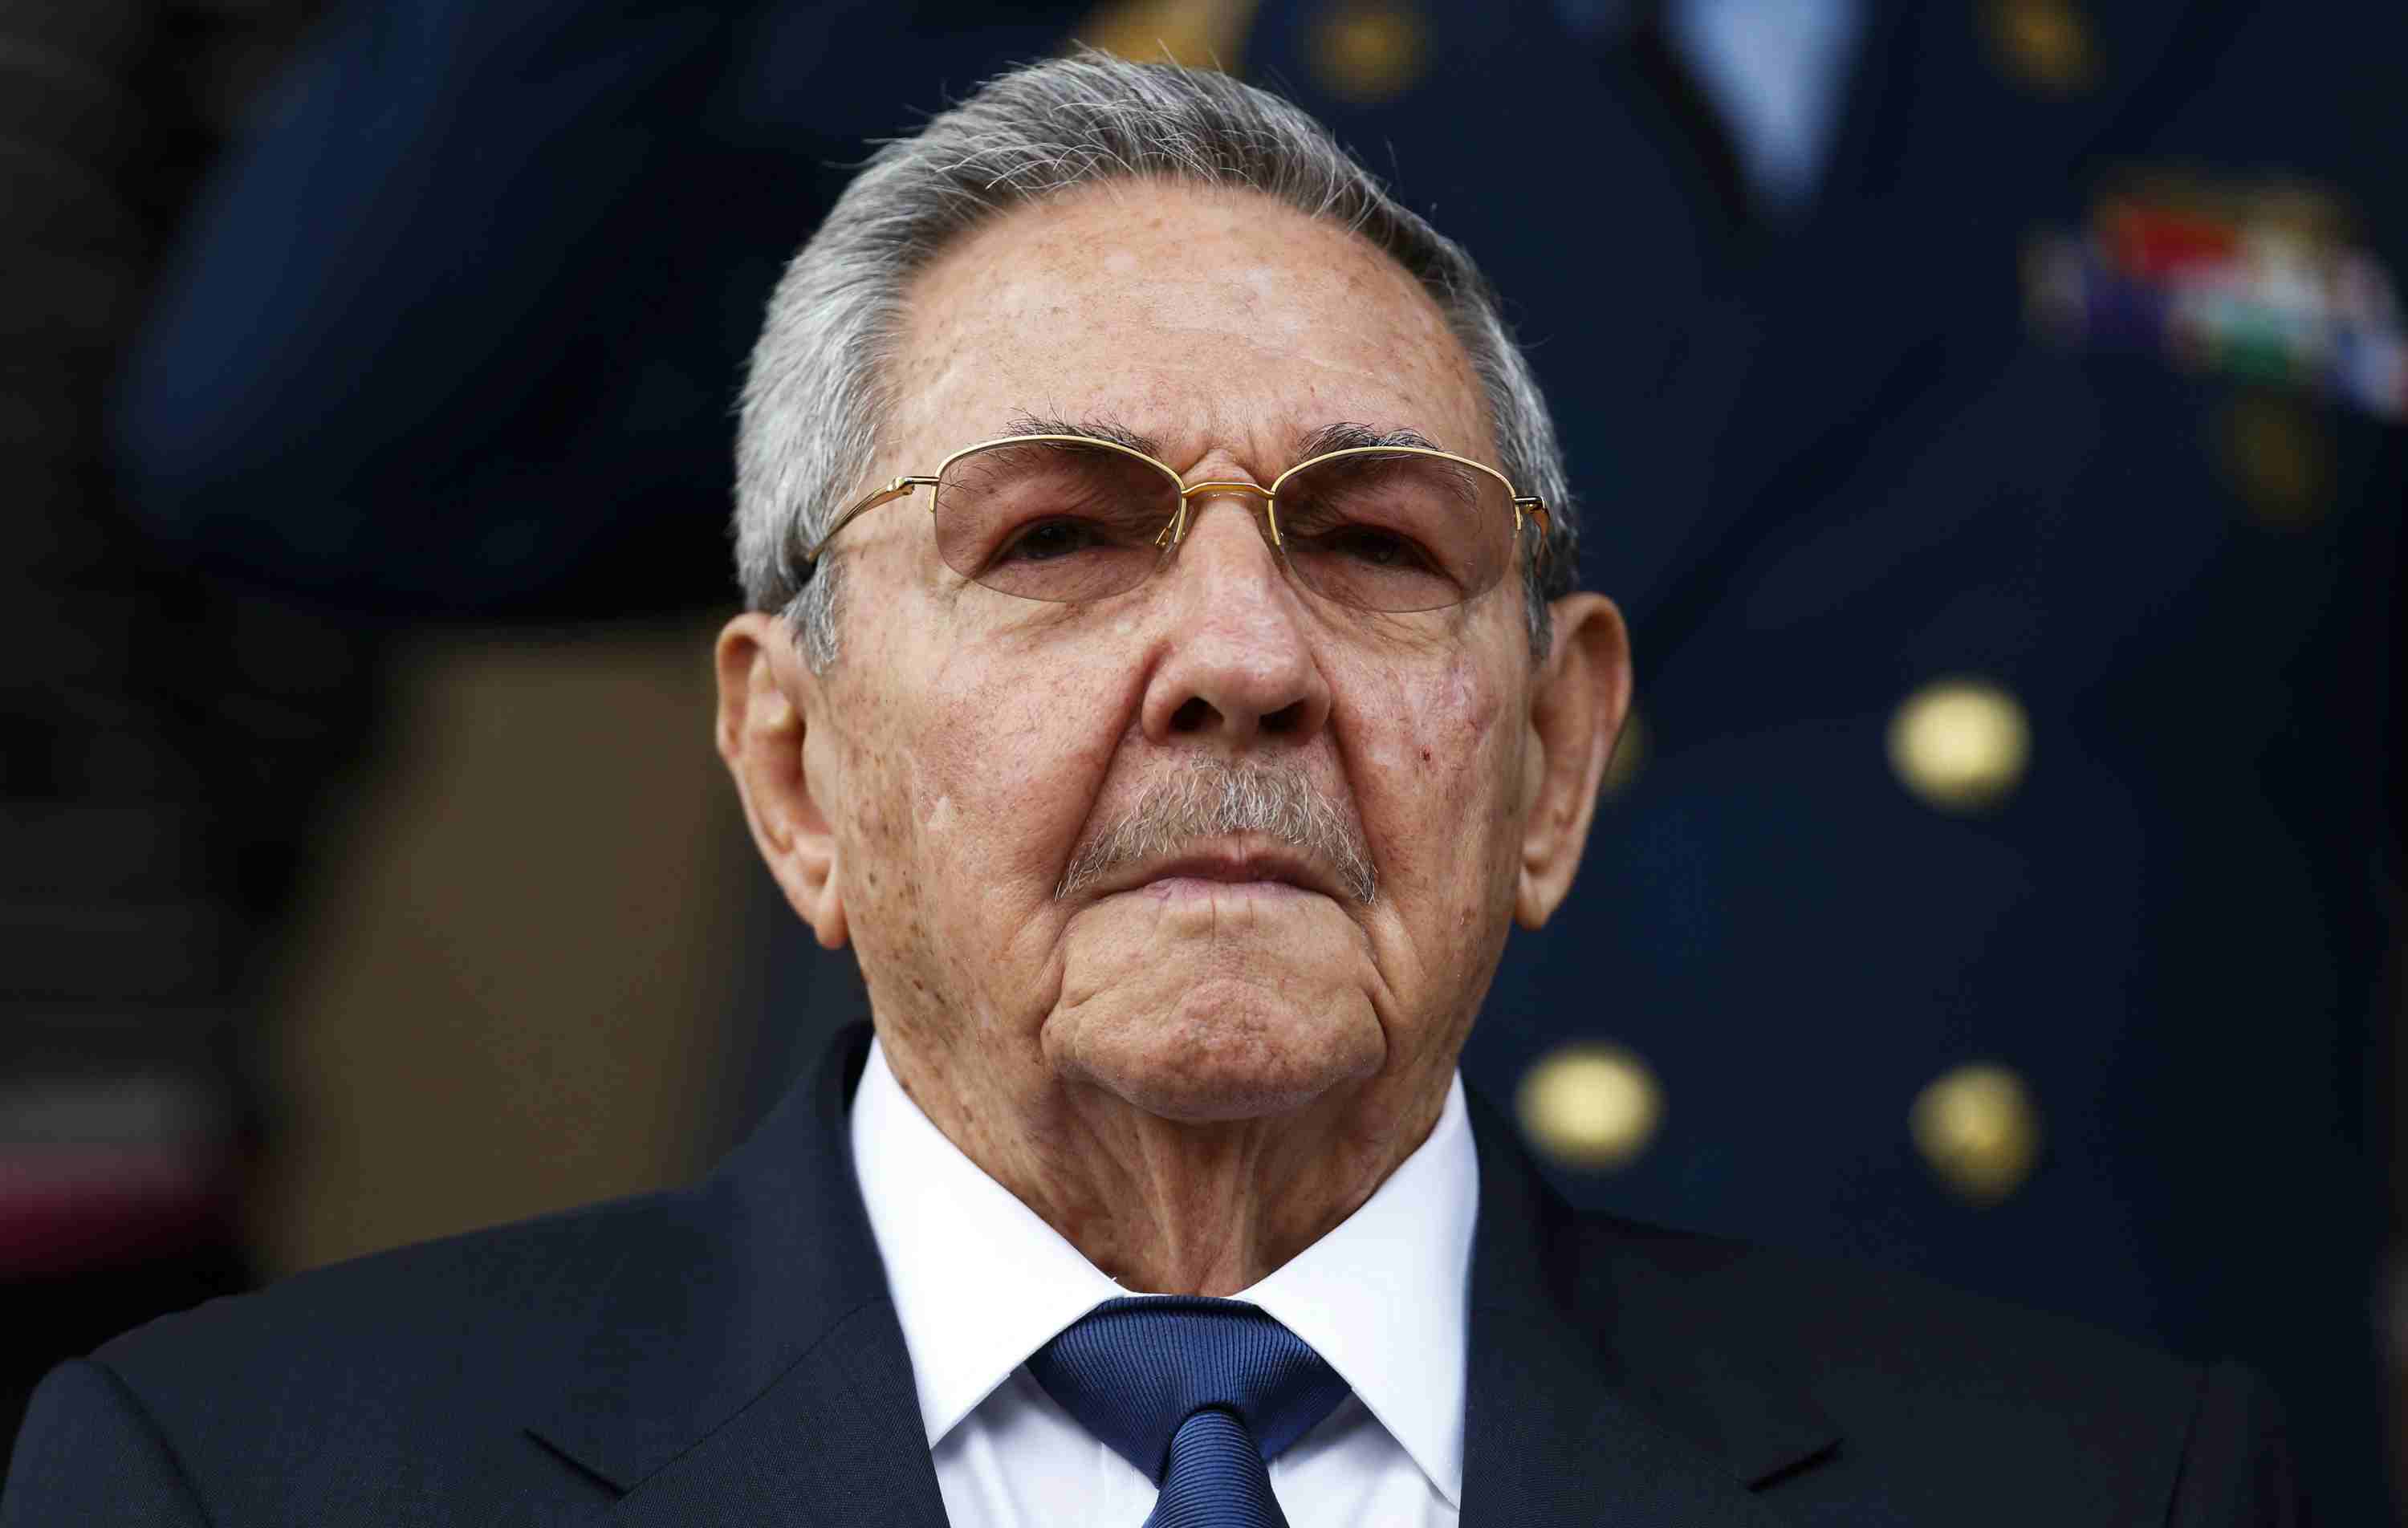 DOBLE LLAVE - En el marco del cumplimiento del reglamento cubano Raúl Castro deberá entregar su cargo tras diez años de mandato